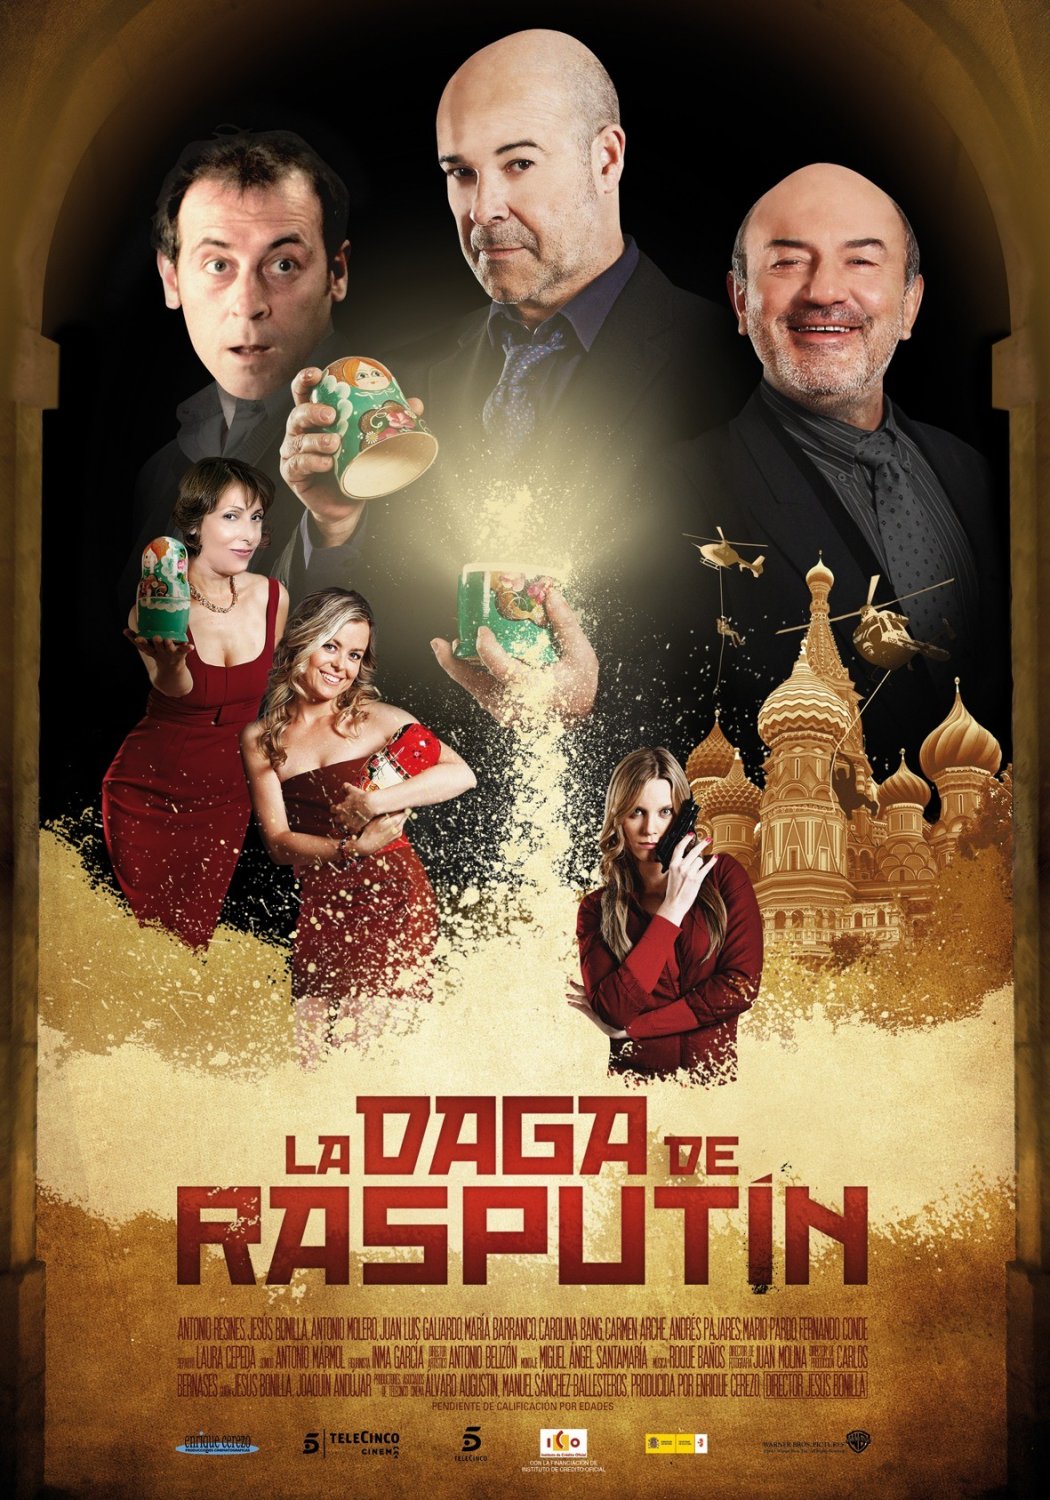 La daga de Rasputin movie